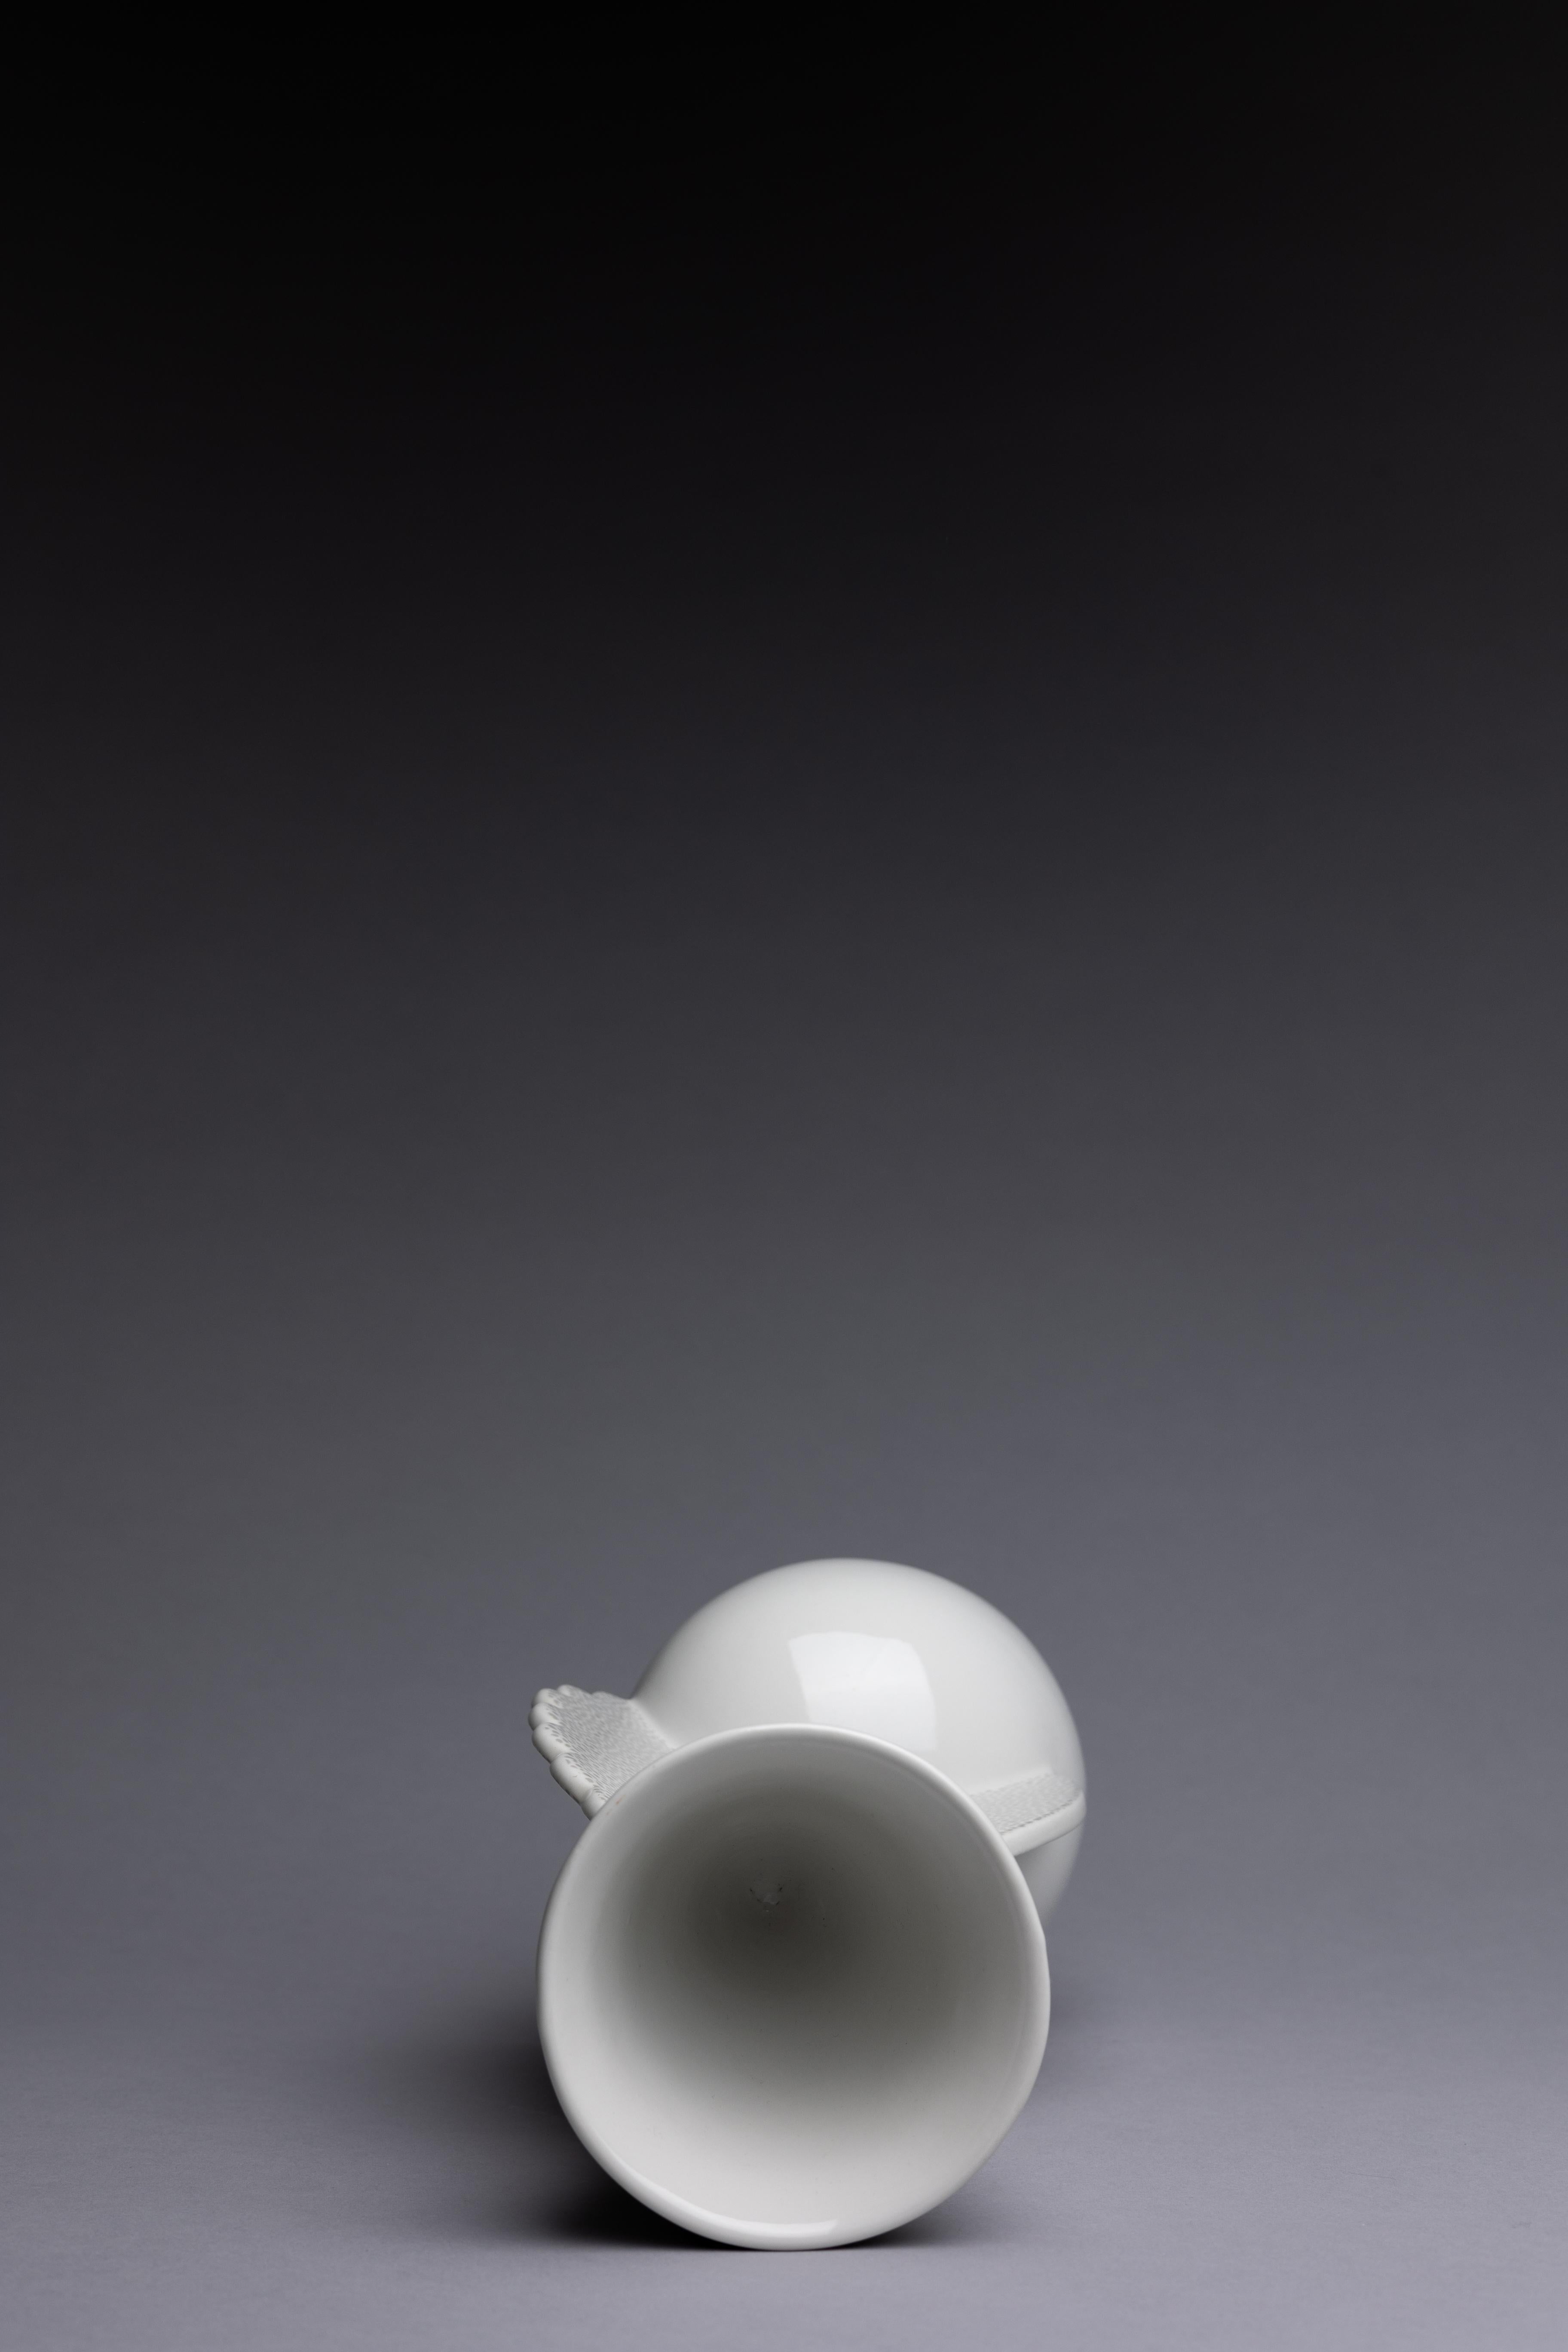 Glazed Matteo Thun Memphis Original 1982 Design Vase